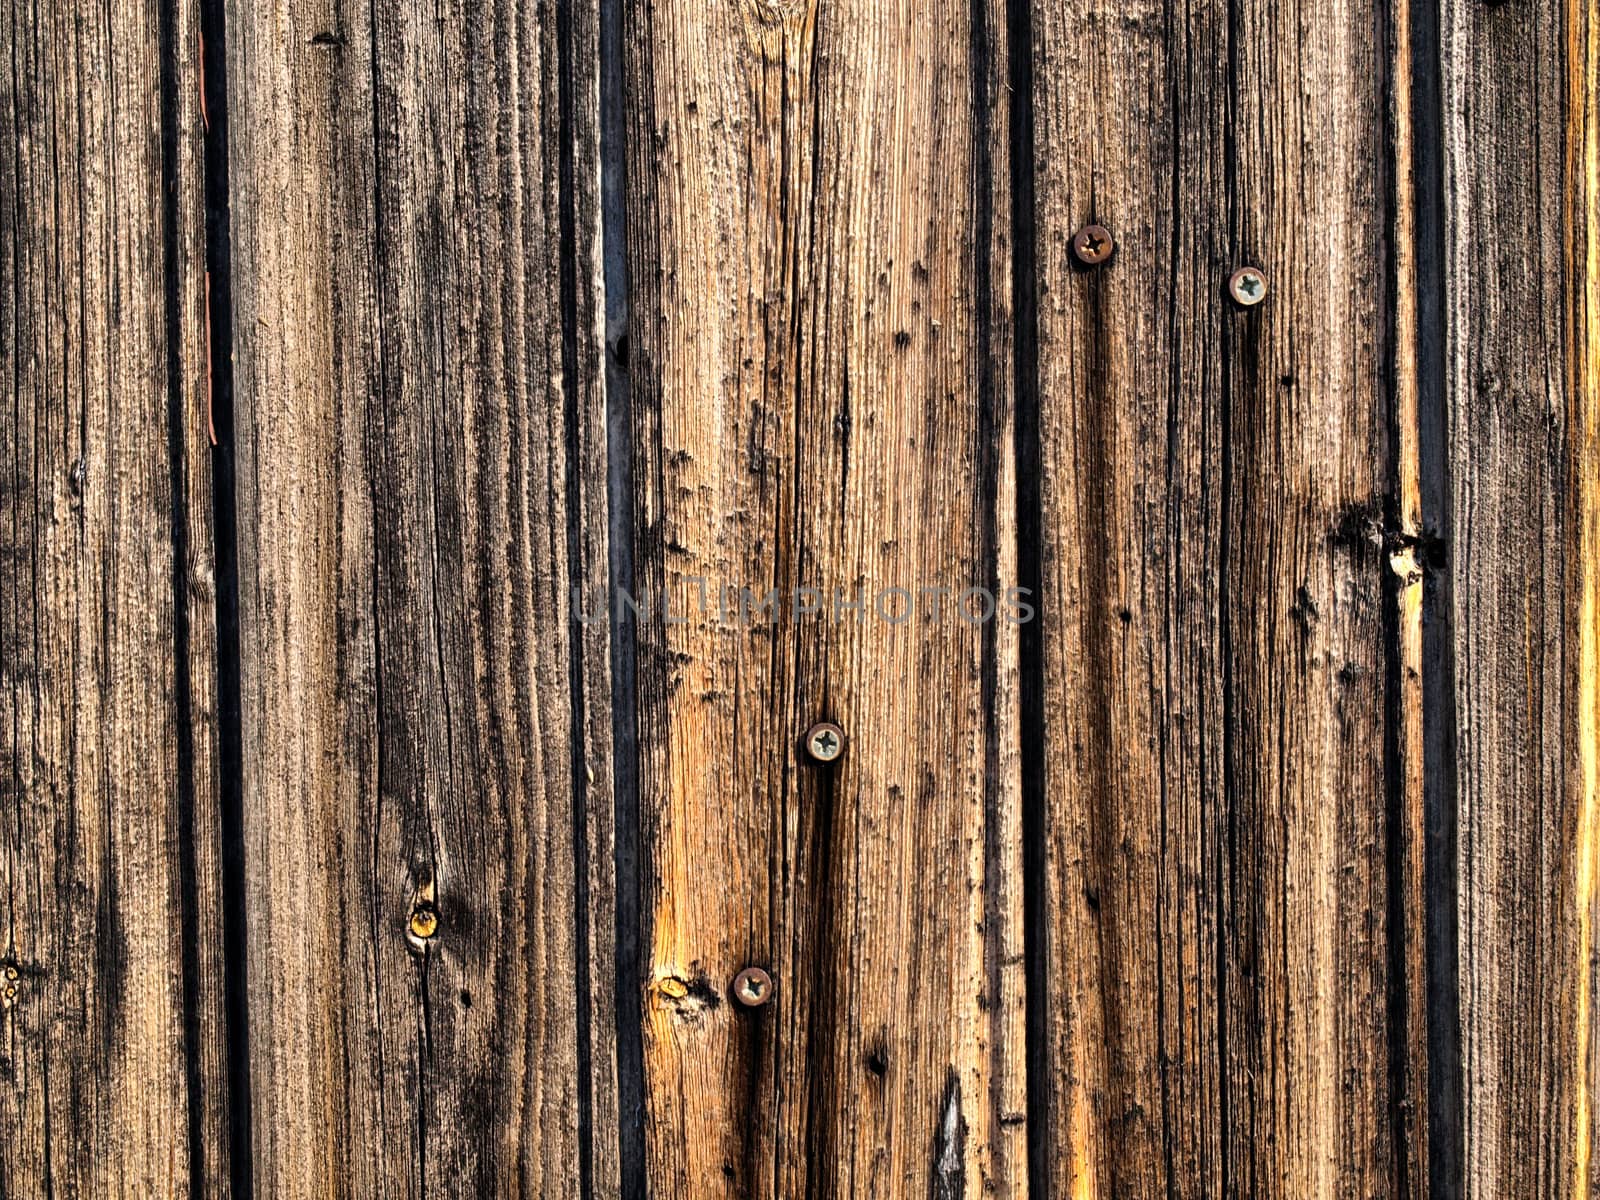 wood texture by jbouzou